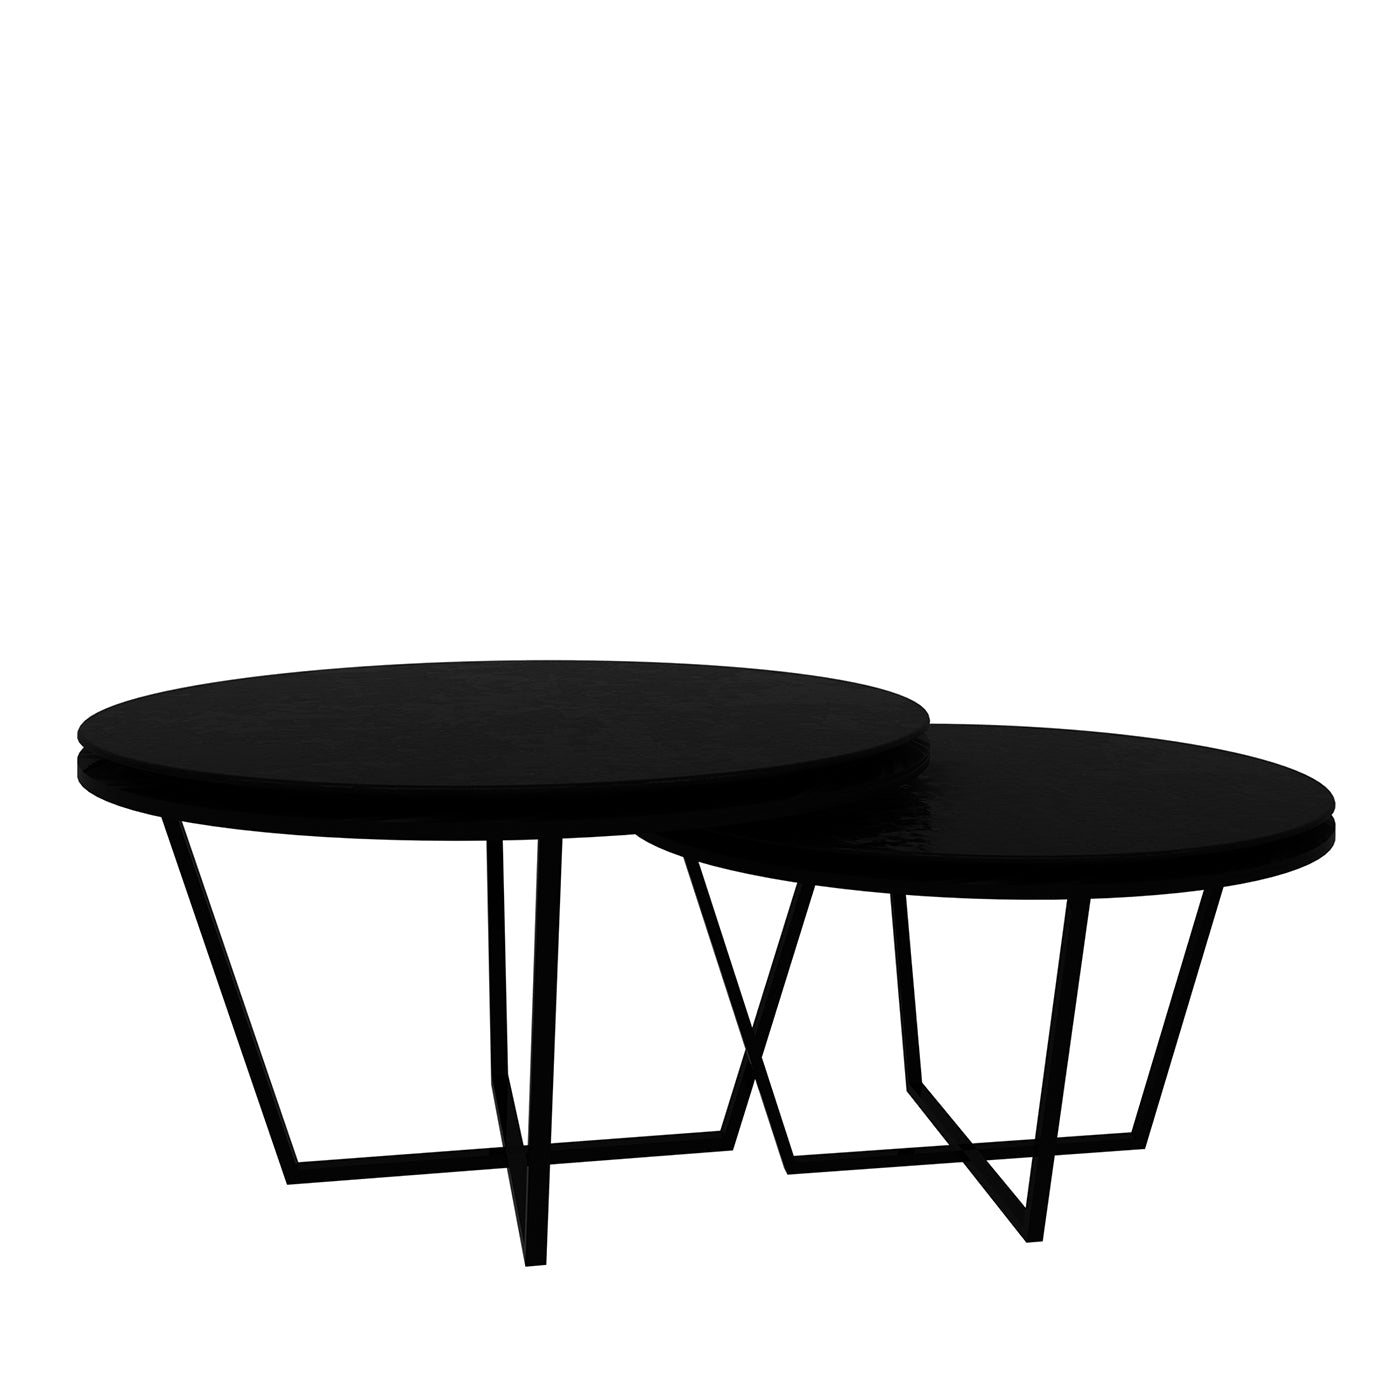 Ensemble de 2 tables basses rondes noires de différentes hauteurs - Vue principale